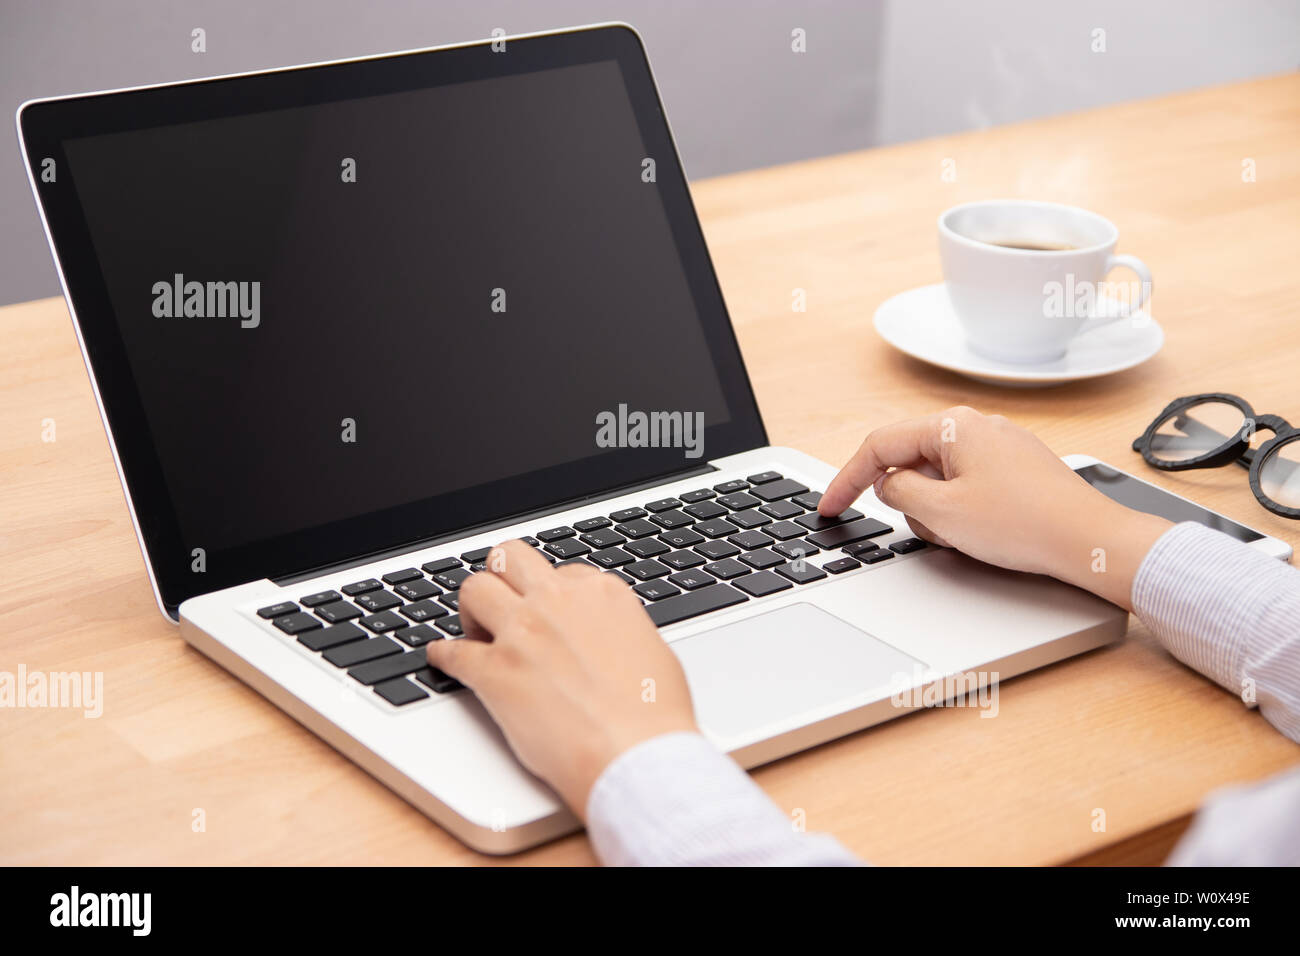 La empresaria trabaja con ordenador portátil, con el dedo con el teclado para escribir. un ordenador portátil con pantalla negra en blanco para copiar el espacio Foto de stock